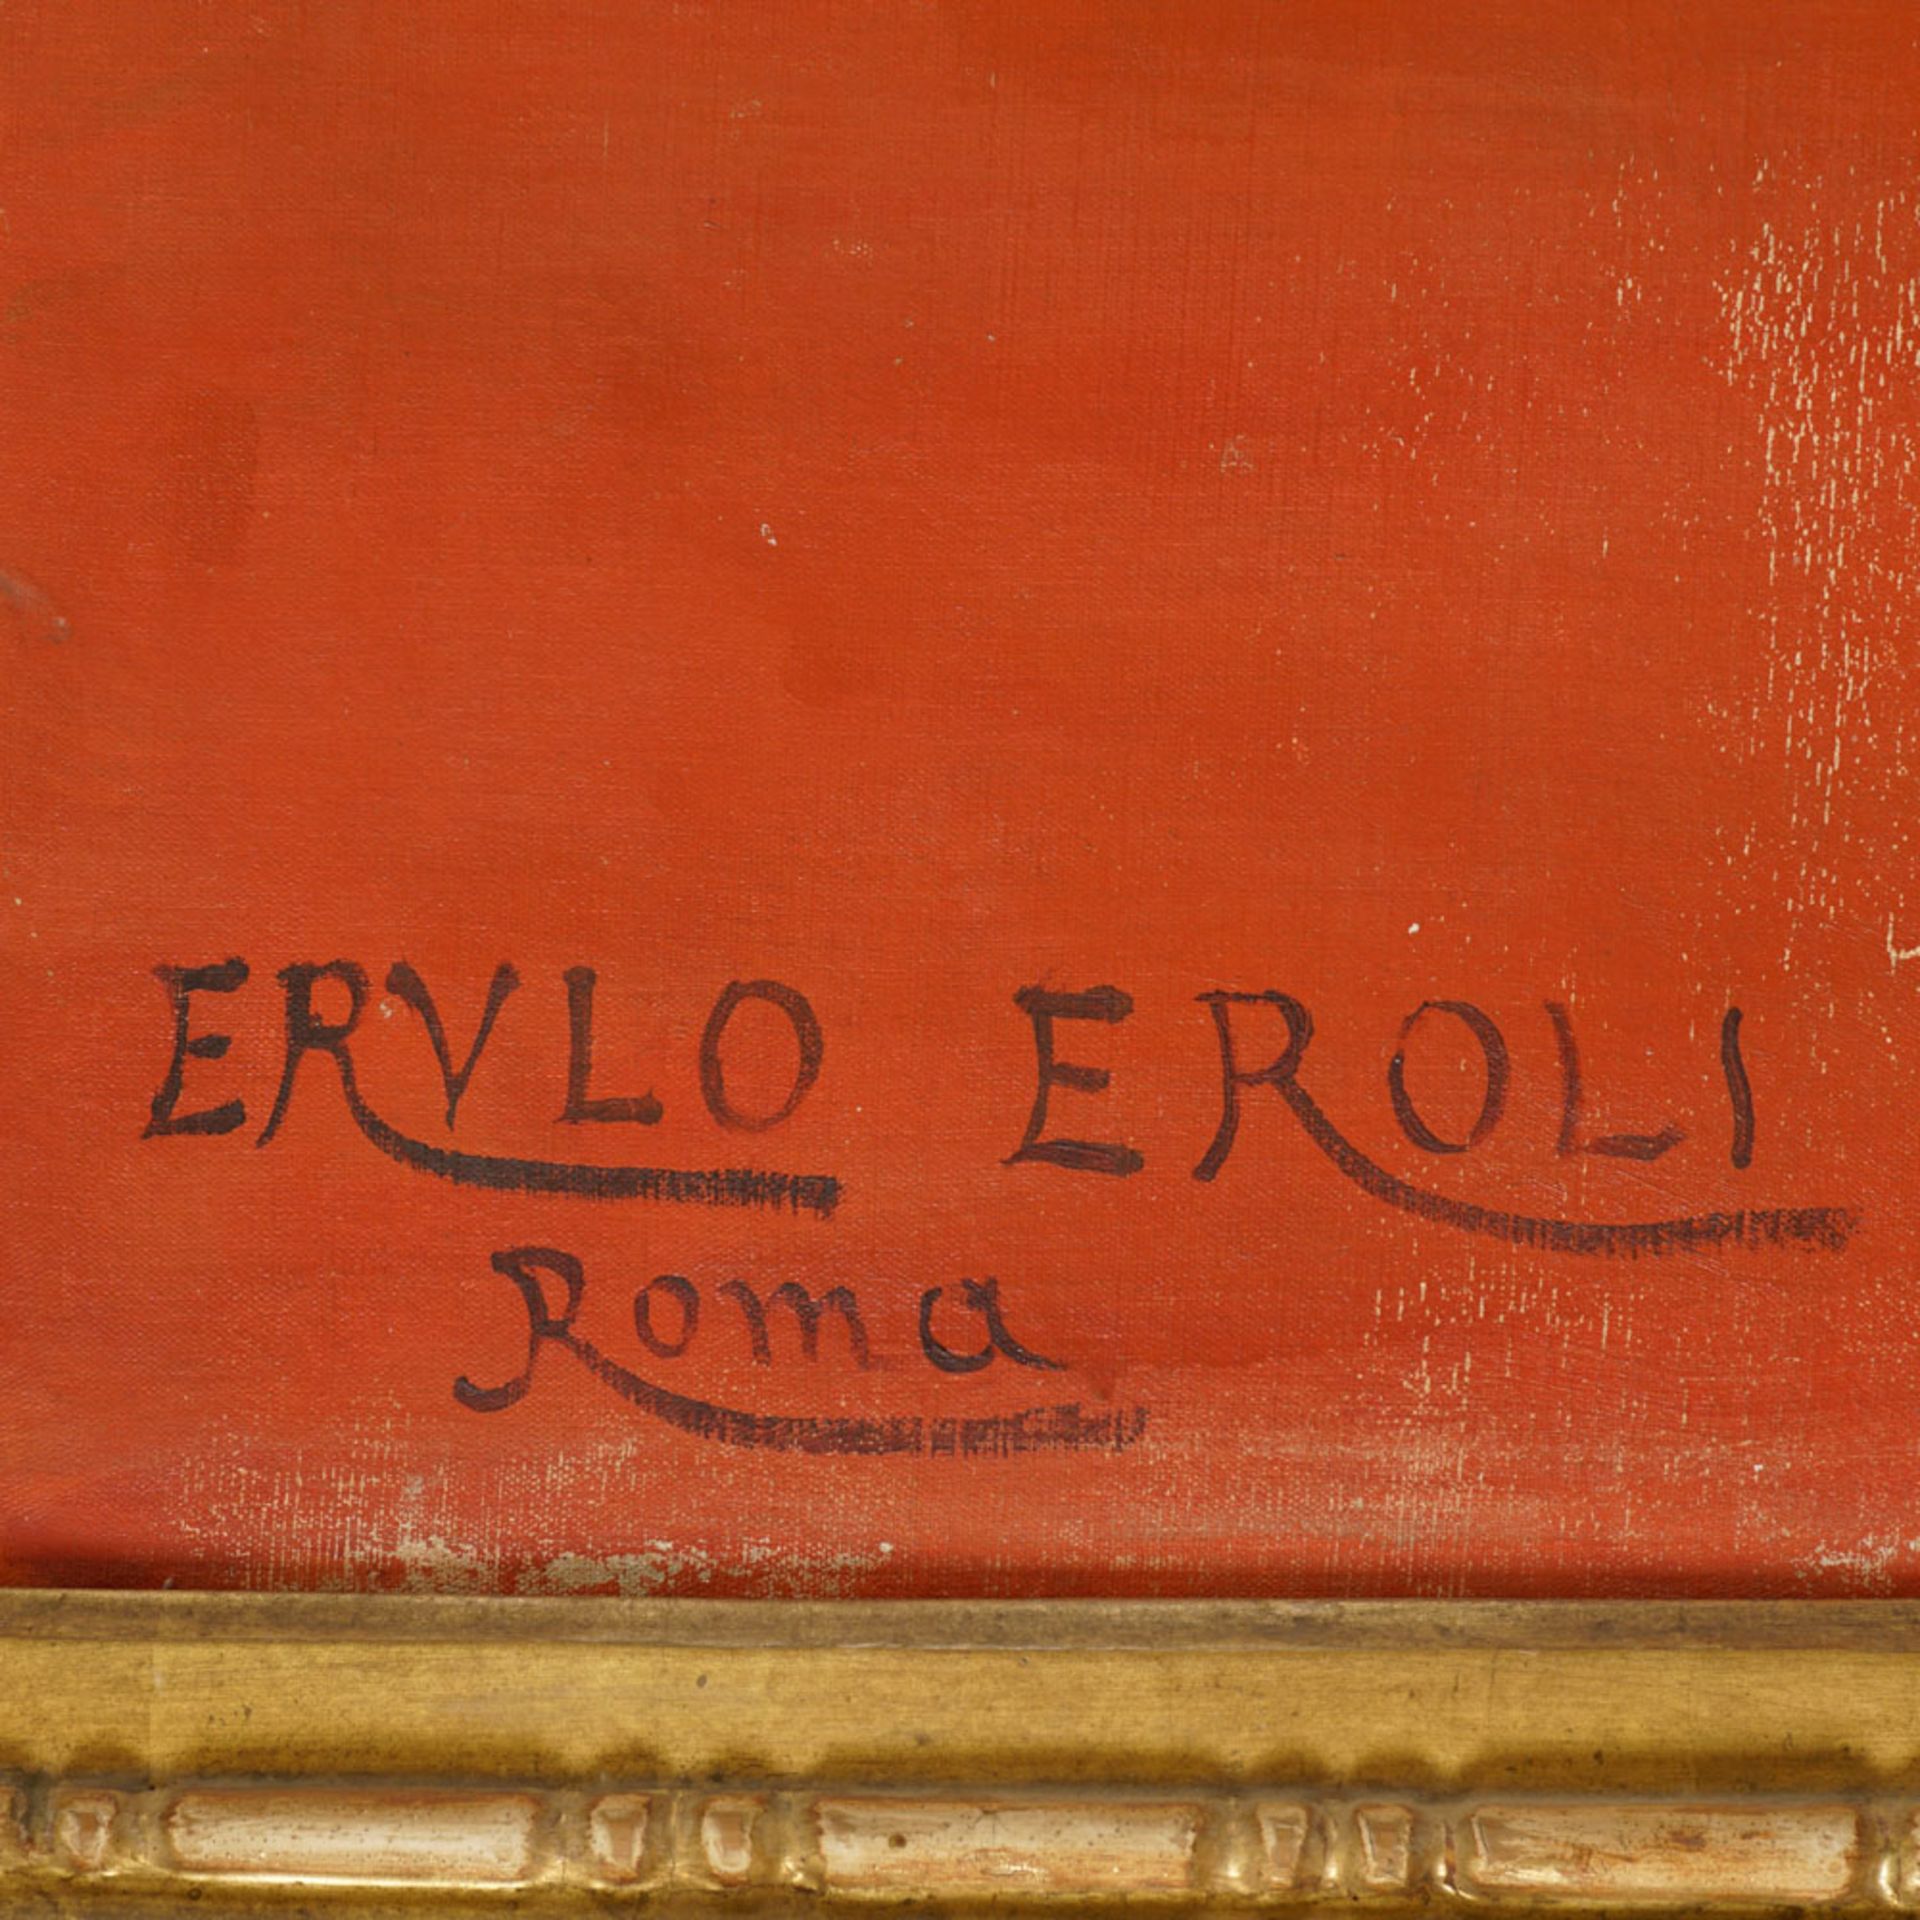 Erulo Eroli Roma 1854 - 1916 248x155 cm. - Image 3 of 3